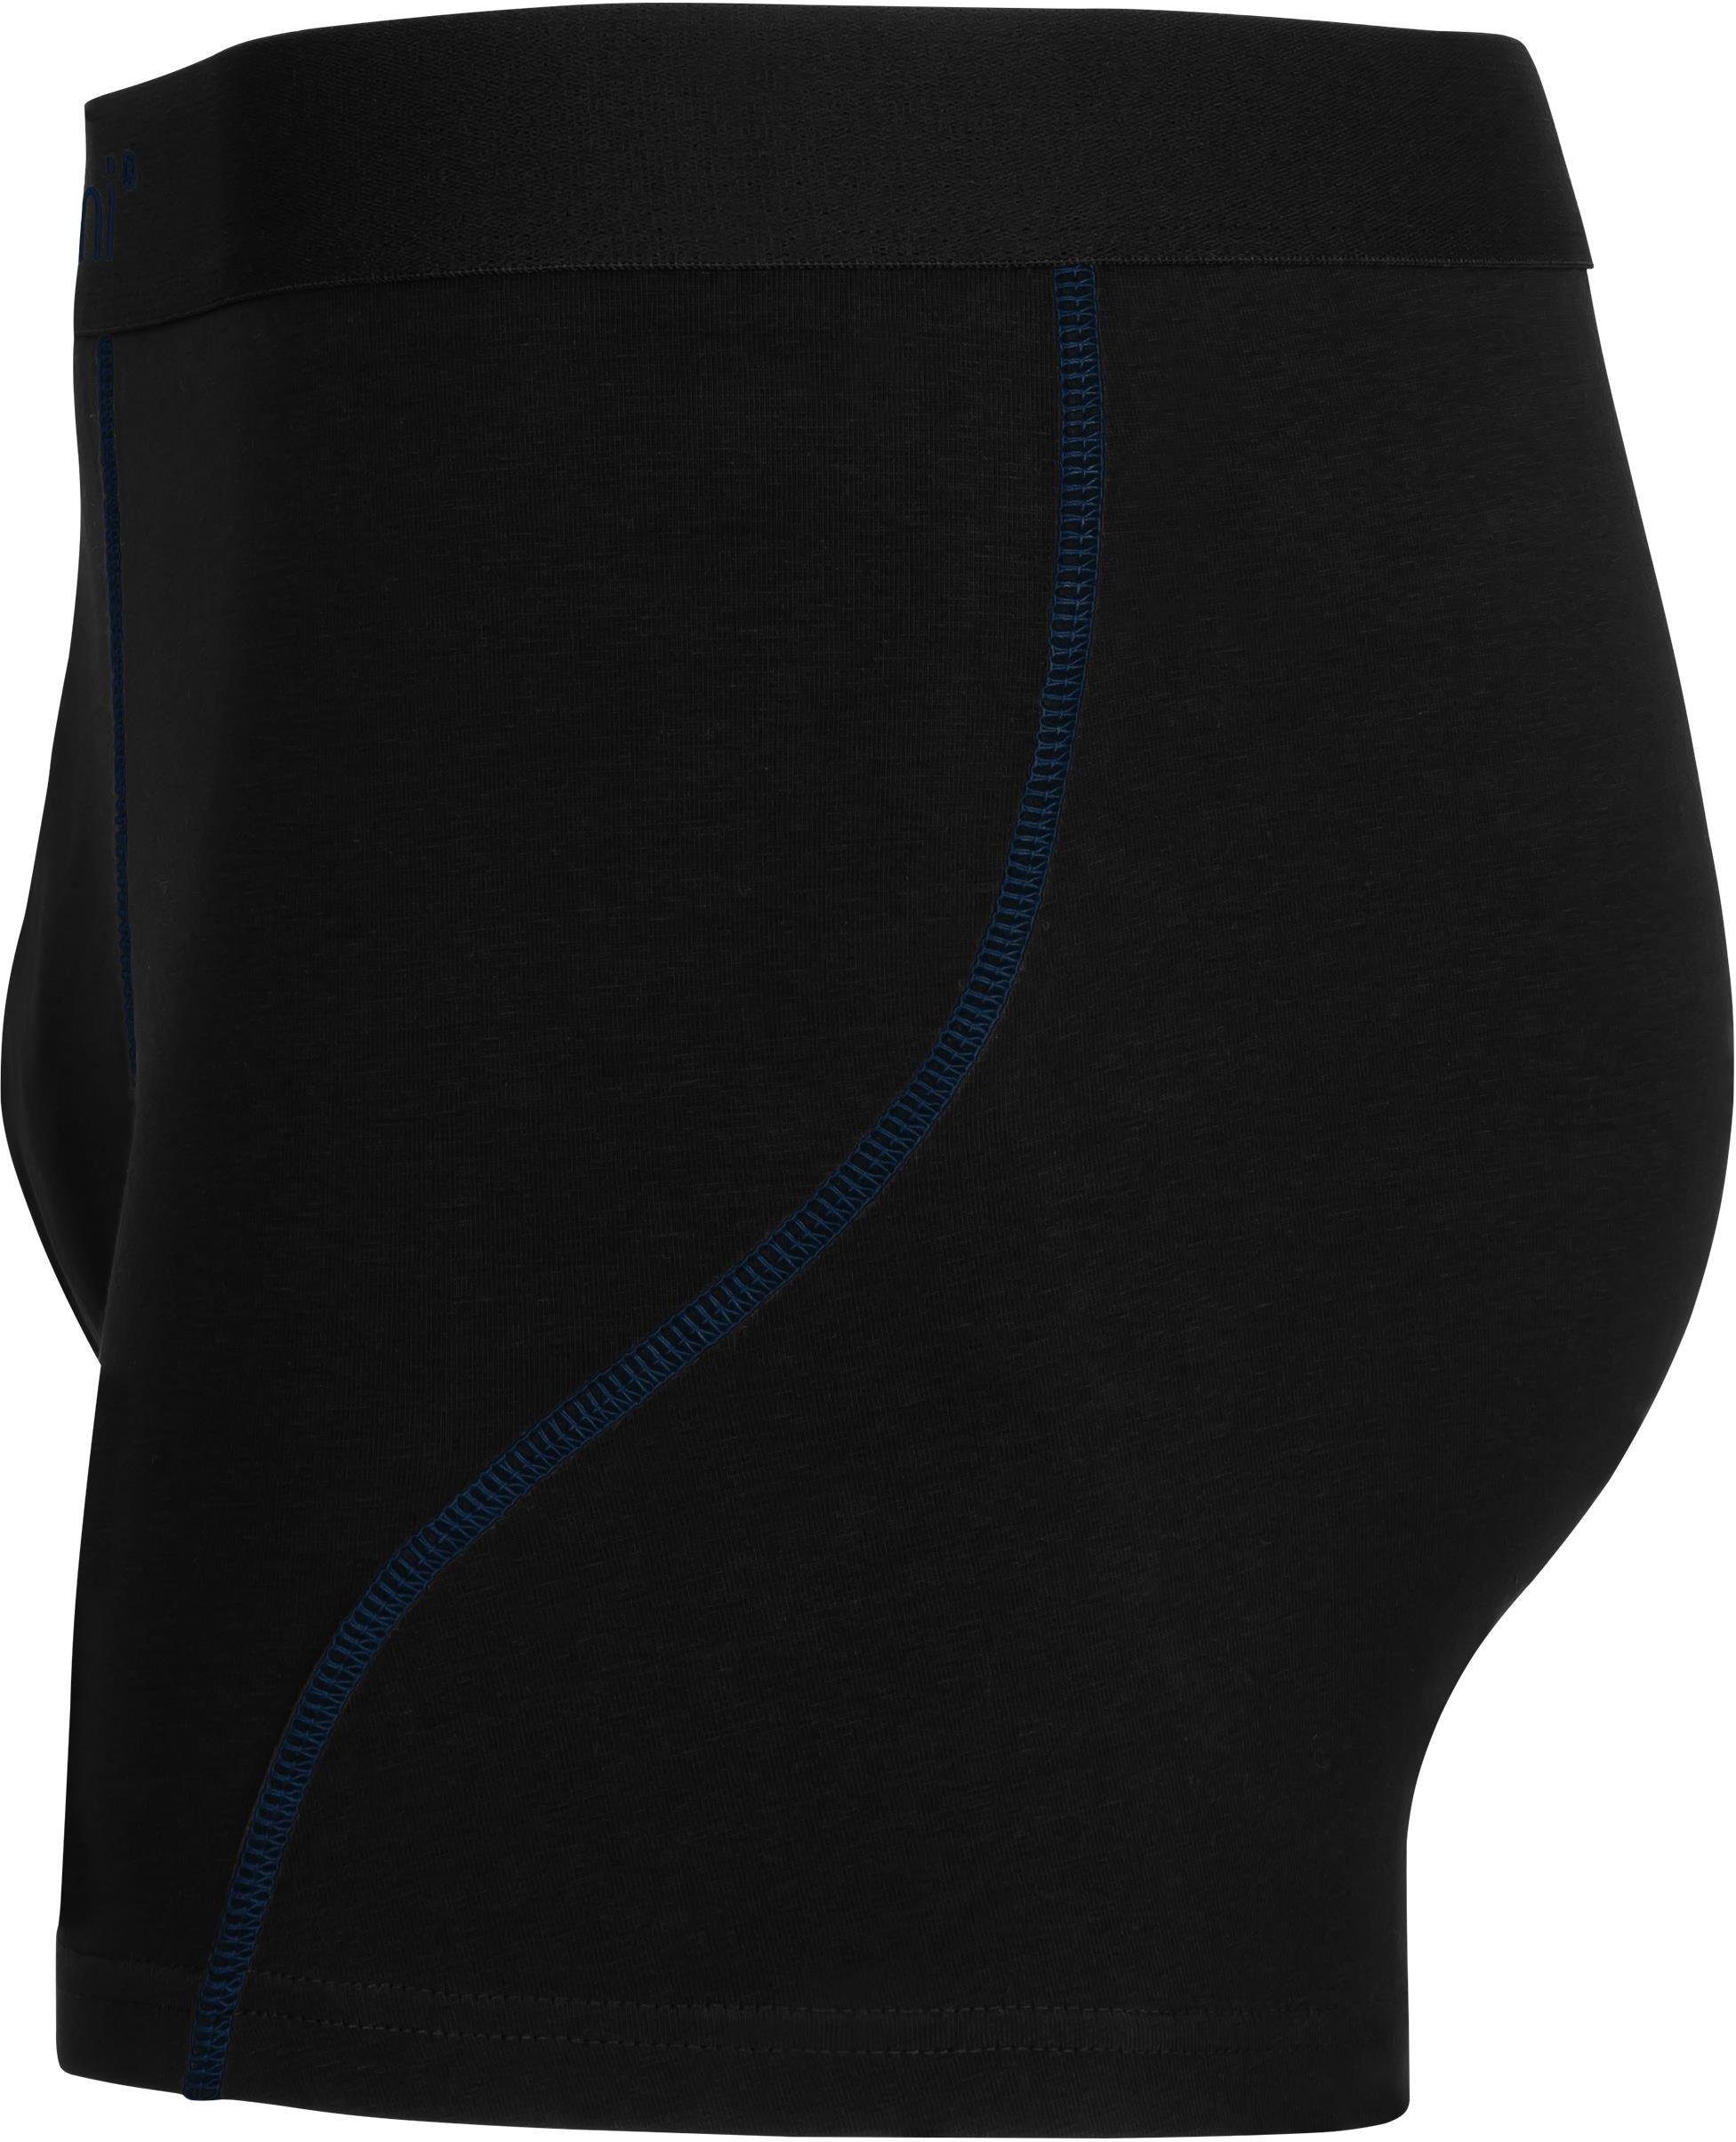 normani Boxershorts Baumwoll-Boxershorts Unterhose x Männer atmungsaktiver für 12 aus Baumwolle Herren Dunkelblau/Hellblau/Türkis